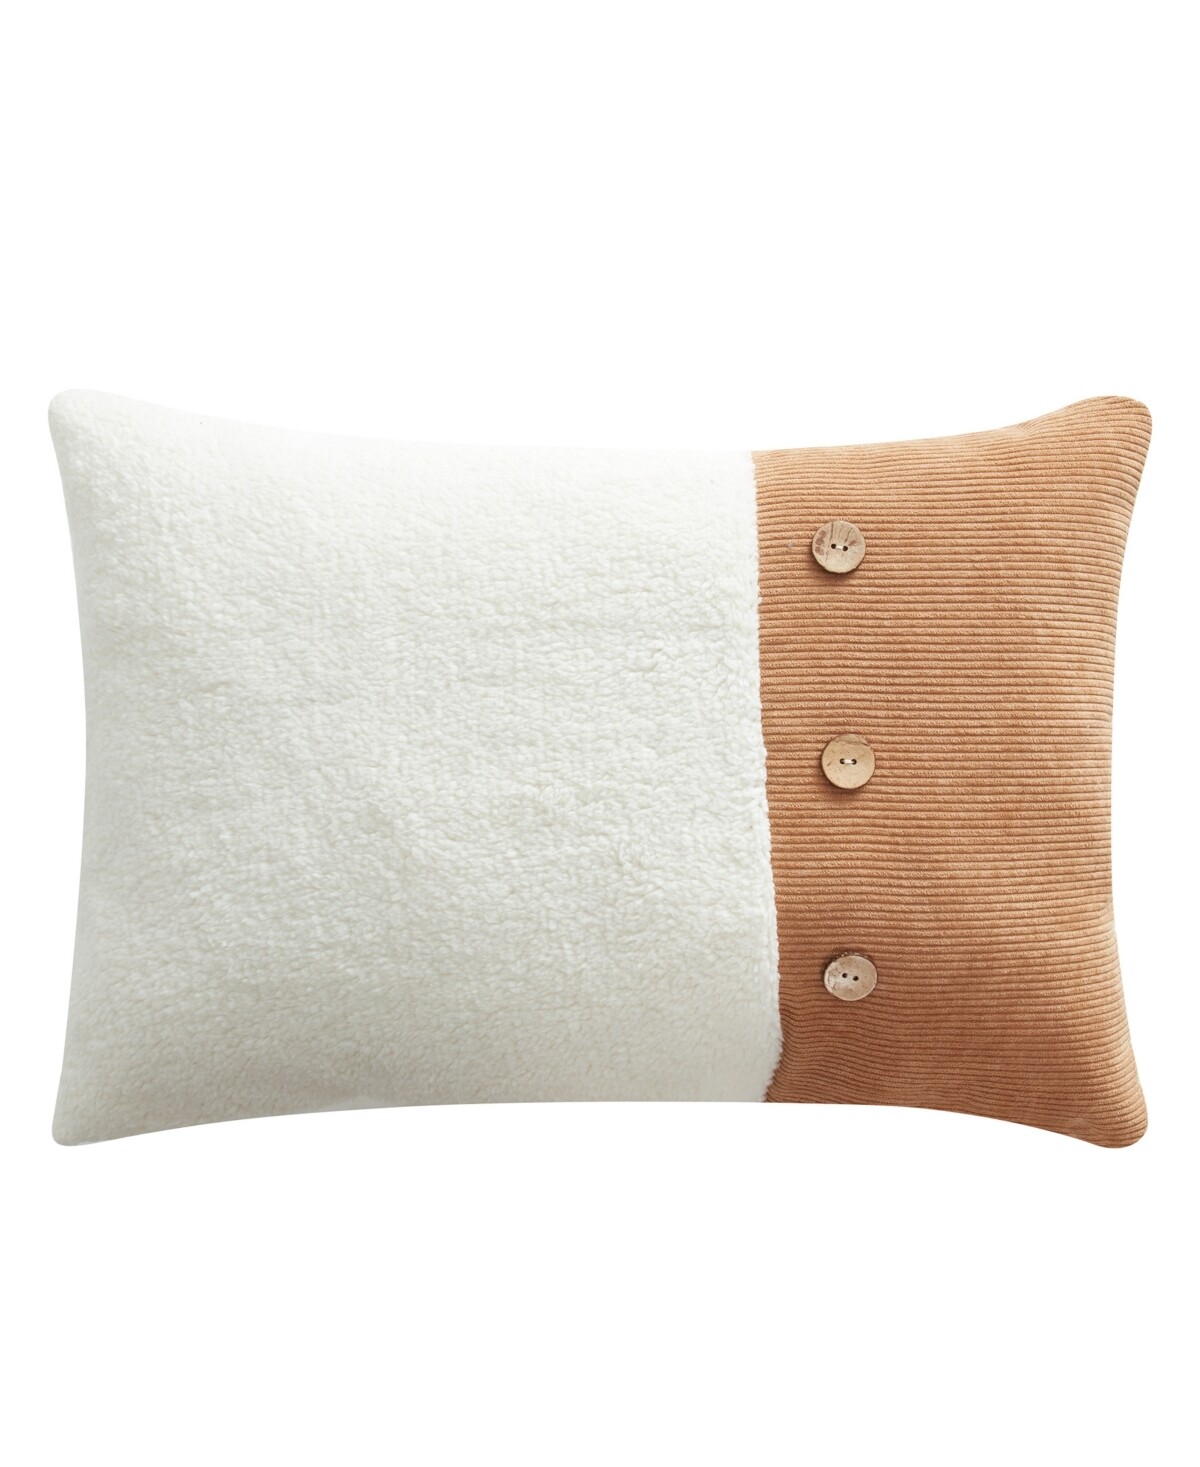 BearPaw Sherpa Corduroy Decorative Pillow, 14" X 20" - Tan